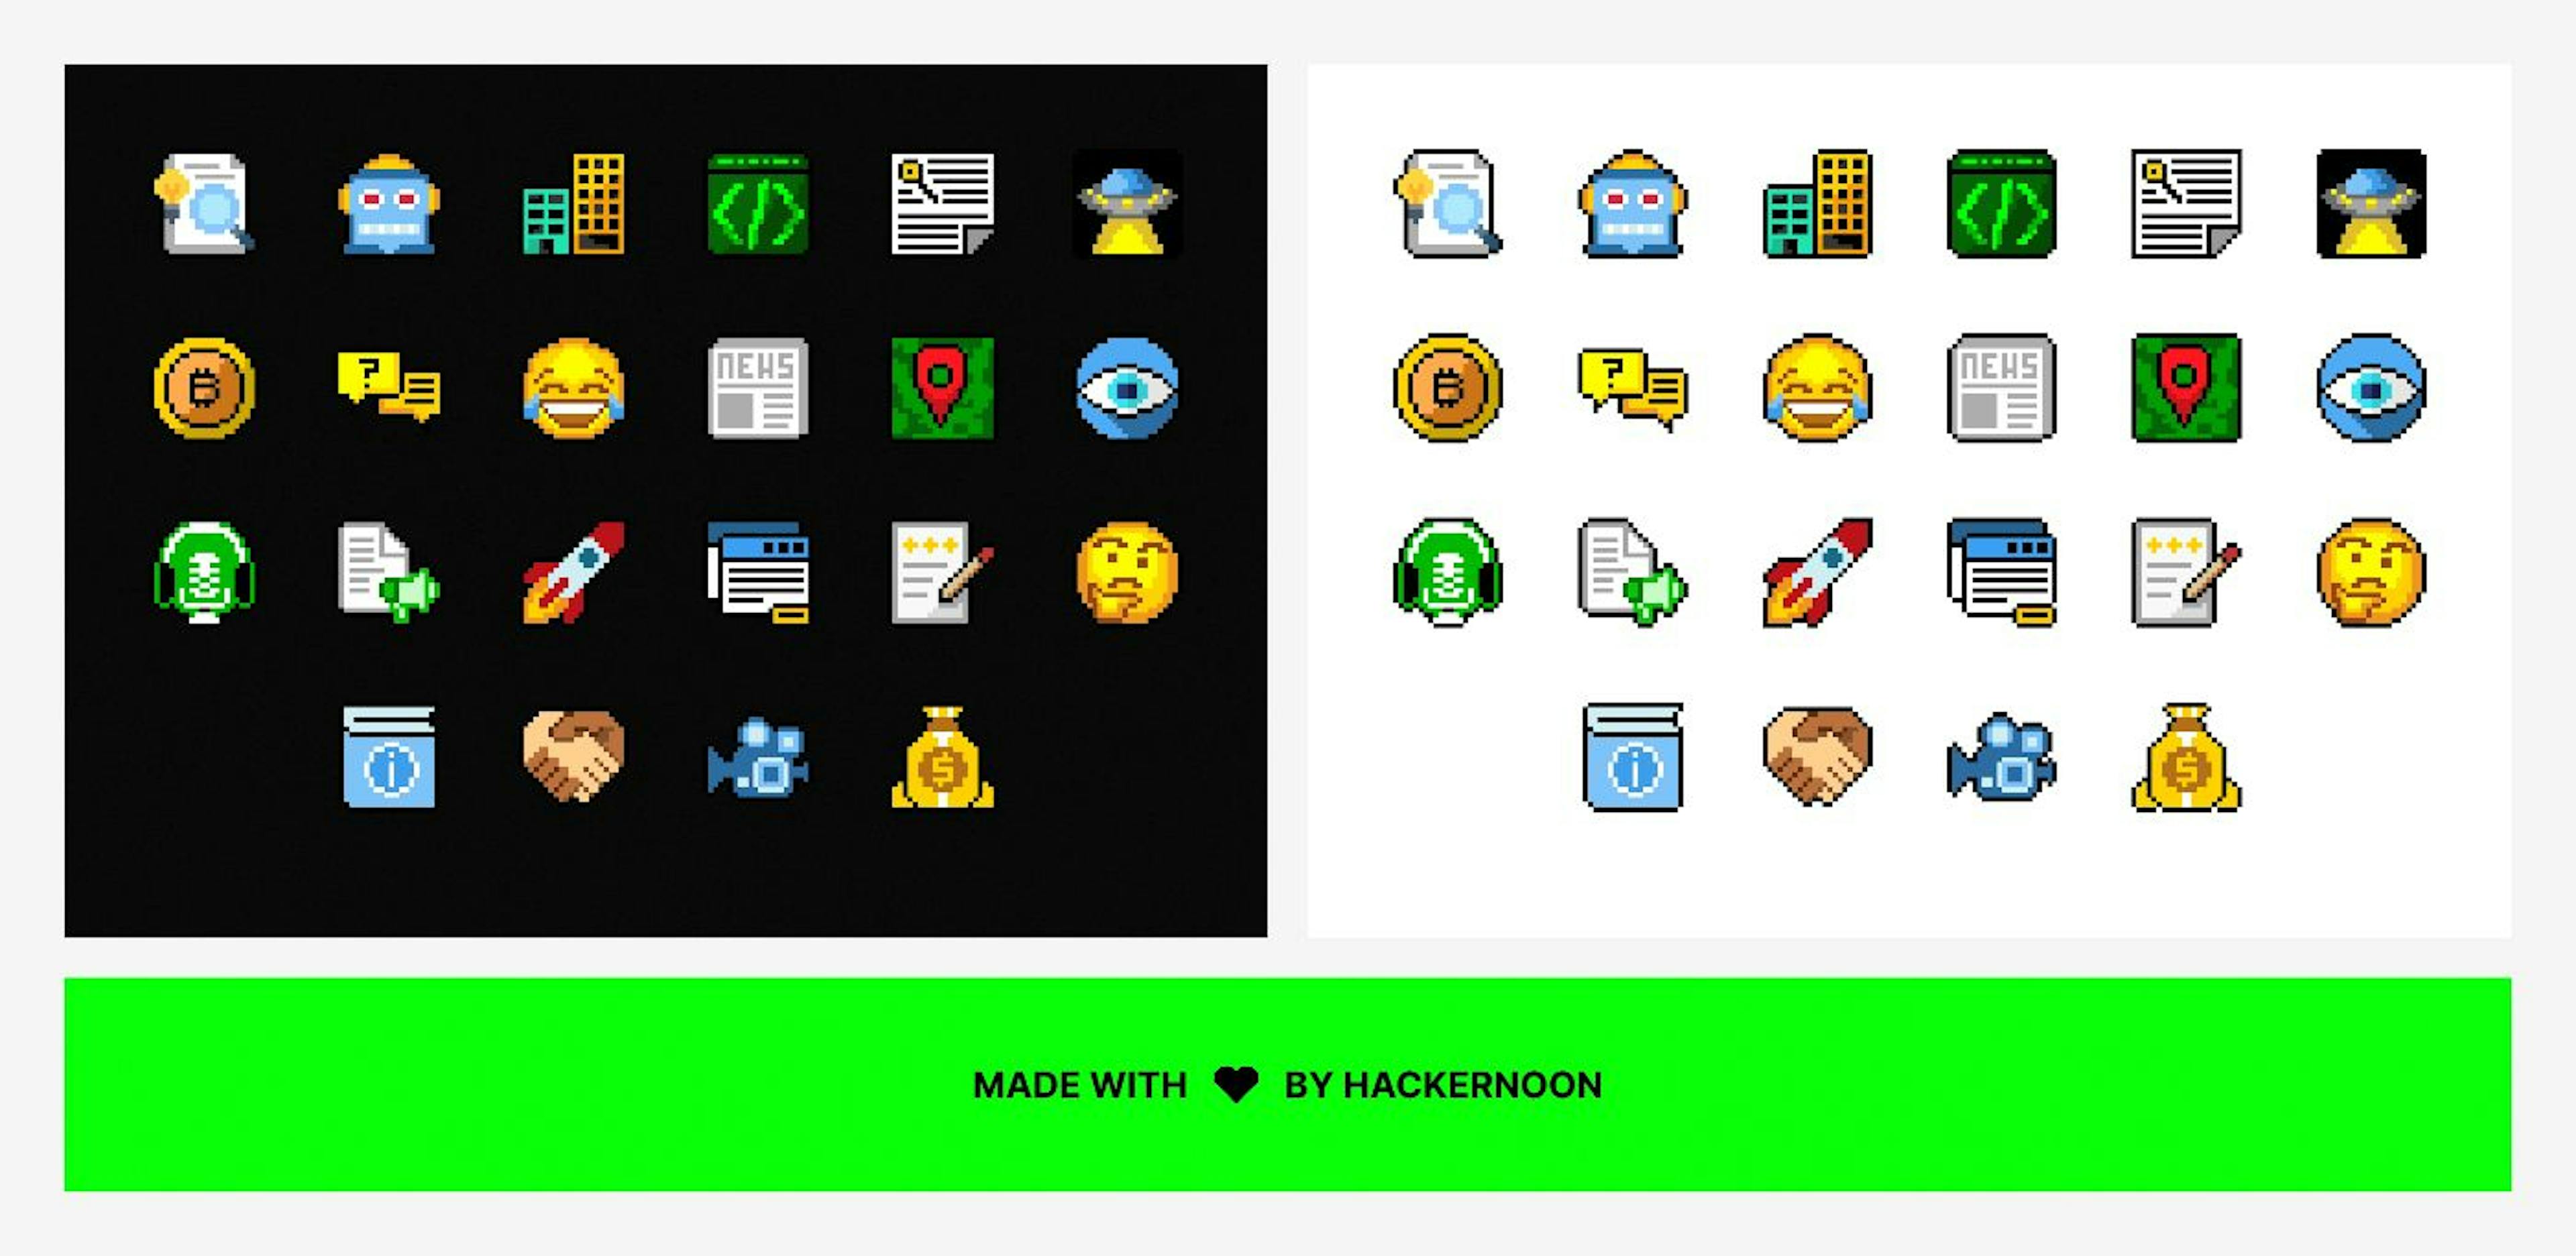 Captura de pantalla del archivo de Figma Community para indicadores de credibilidad Emoji